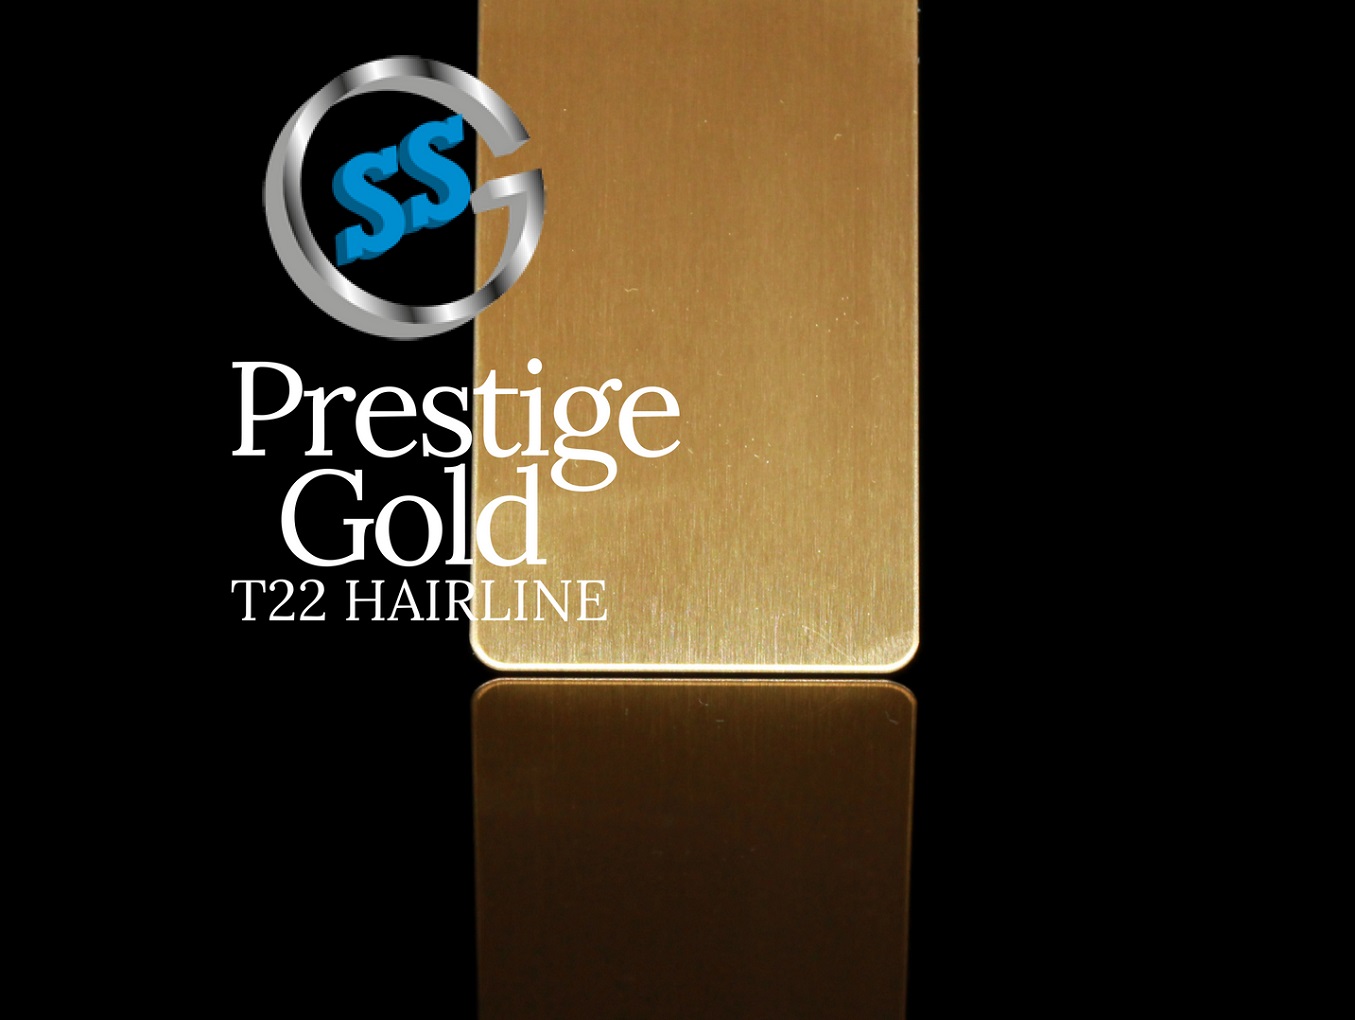 Inox colorato T22 Titanium Prestige Gold Hairline, inox elettro satinato lineare colorato T22 oro